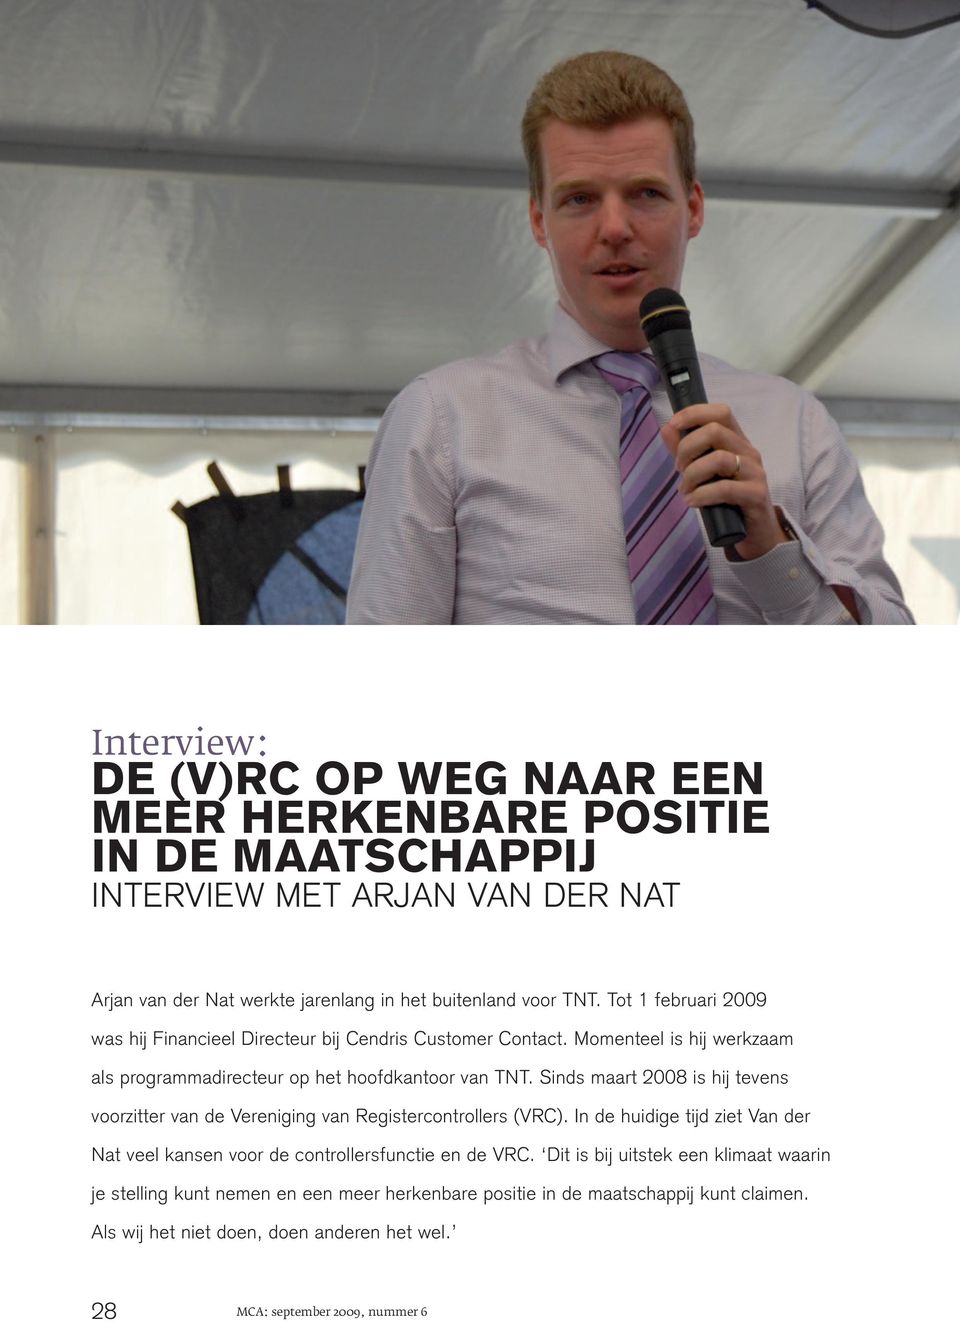 Sinds maart 2008 is hij tevens voorzitter van de Vereniging van Registercontrollers (VRC). In de huidige tijd ziet Van der Nat veel kansen voor de controllersfunctie en de VRC.